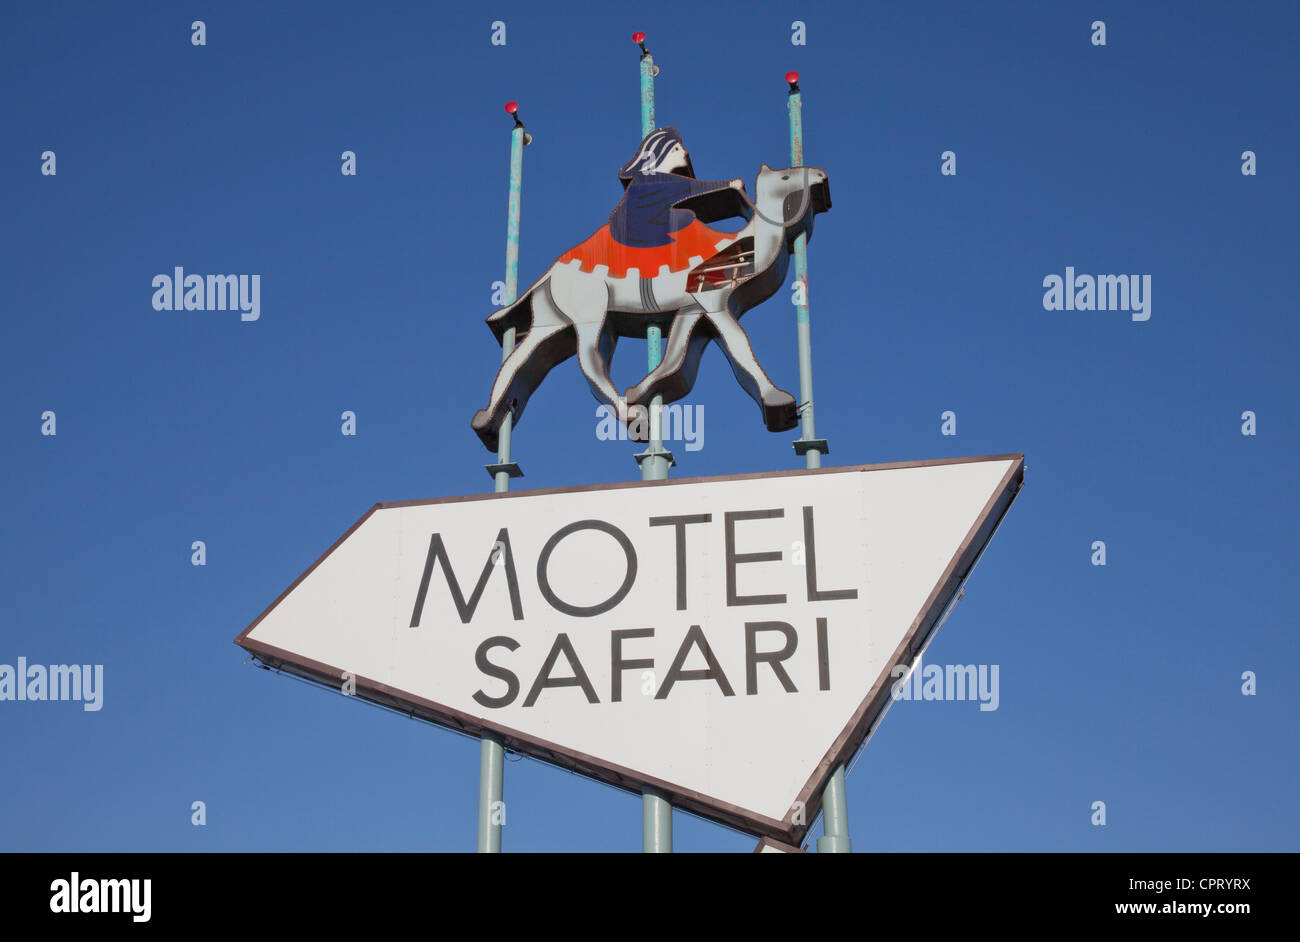 Close-up of Motel safari sign, old Route 66, Tucumcari, New Mexico. Stock Photo